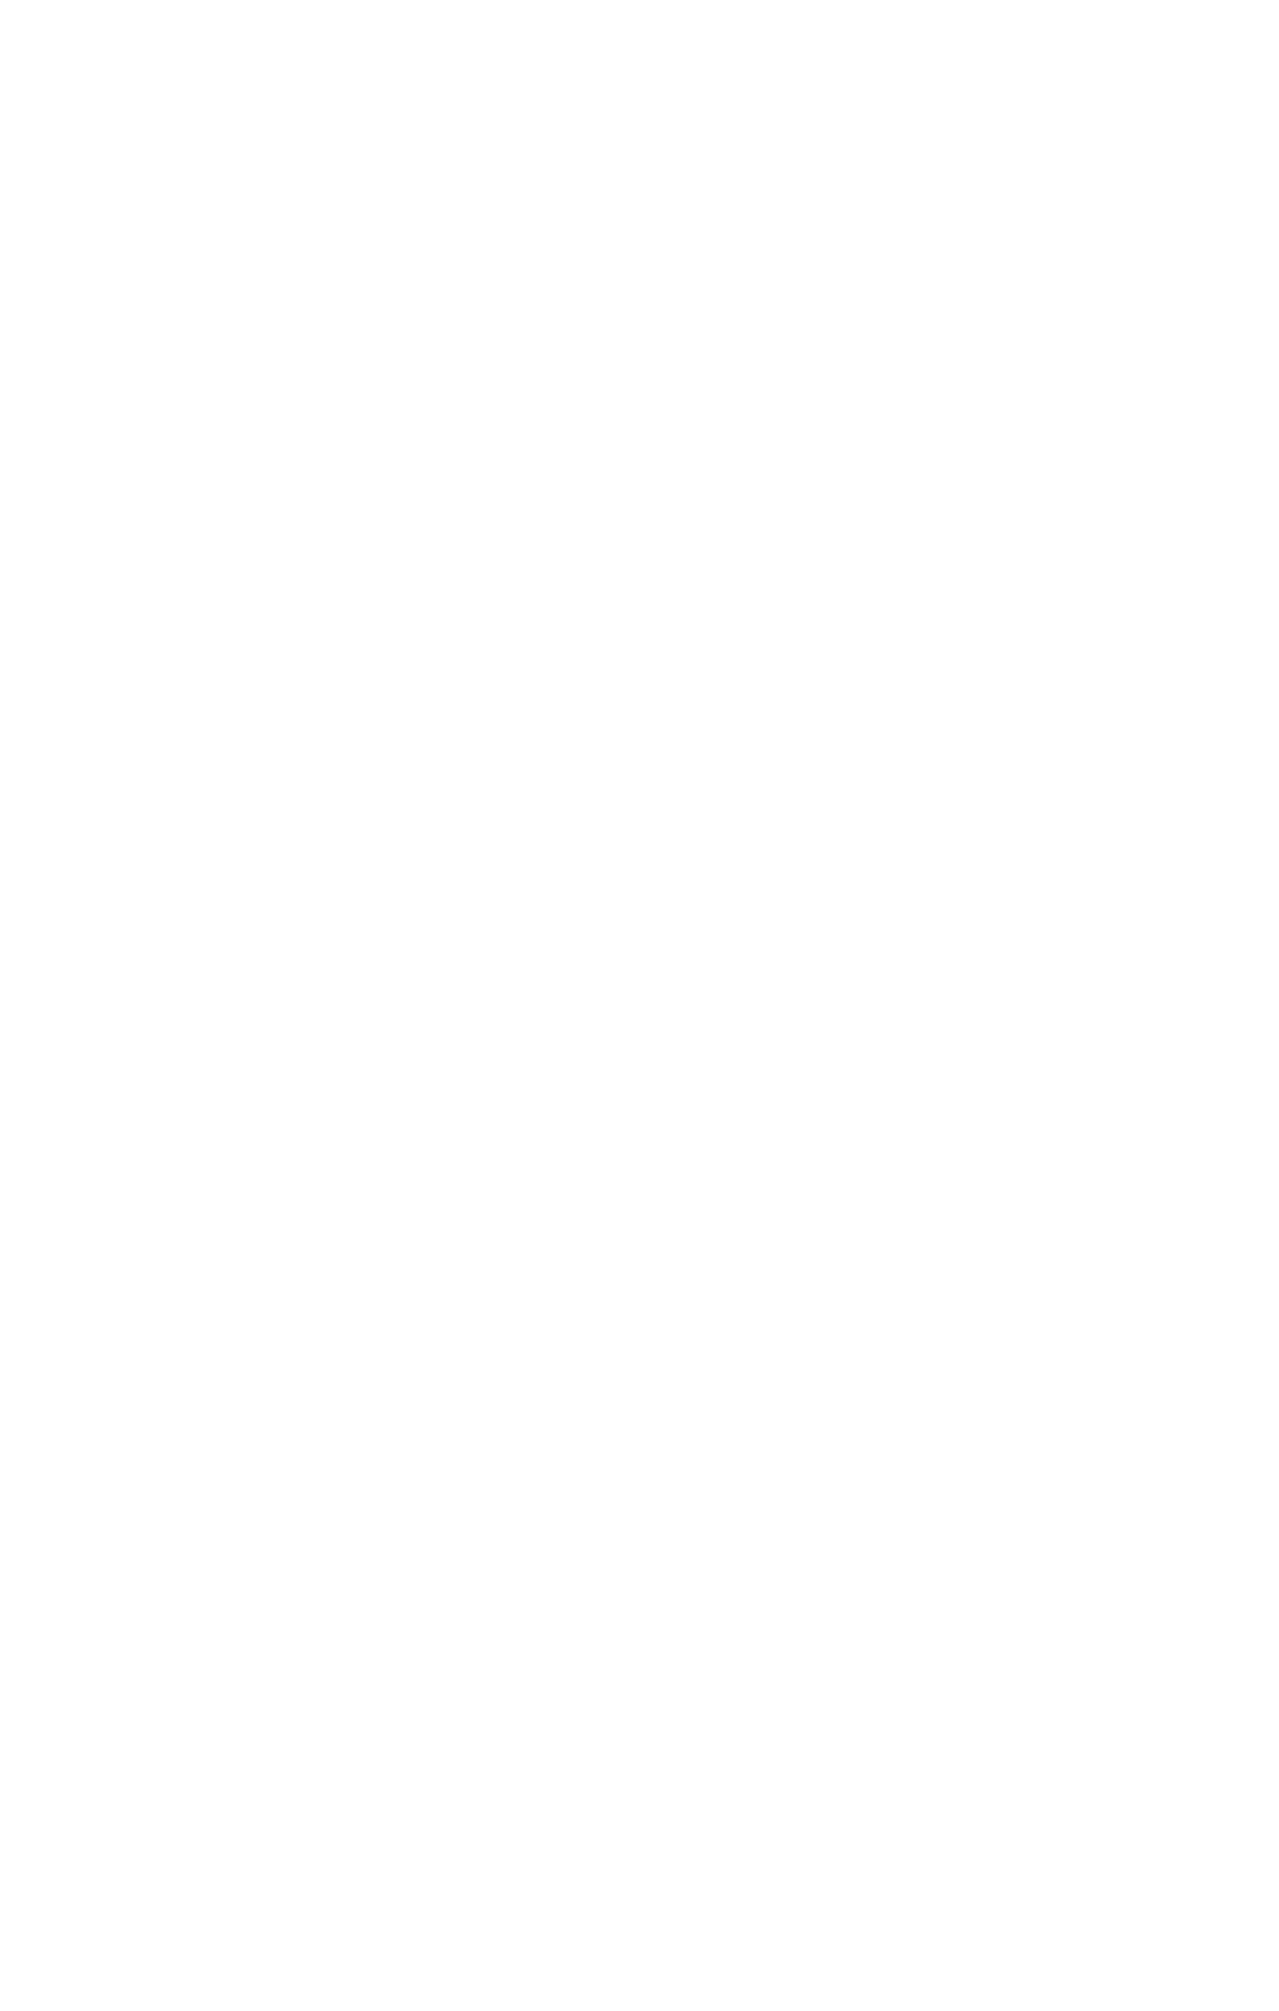 No Tie!